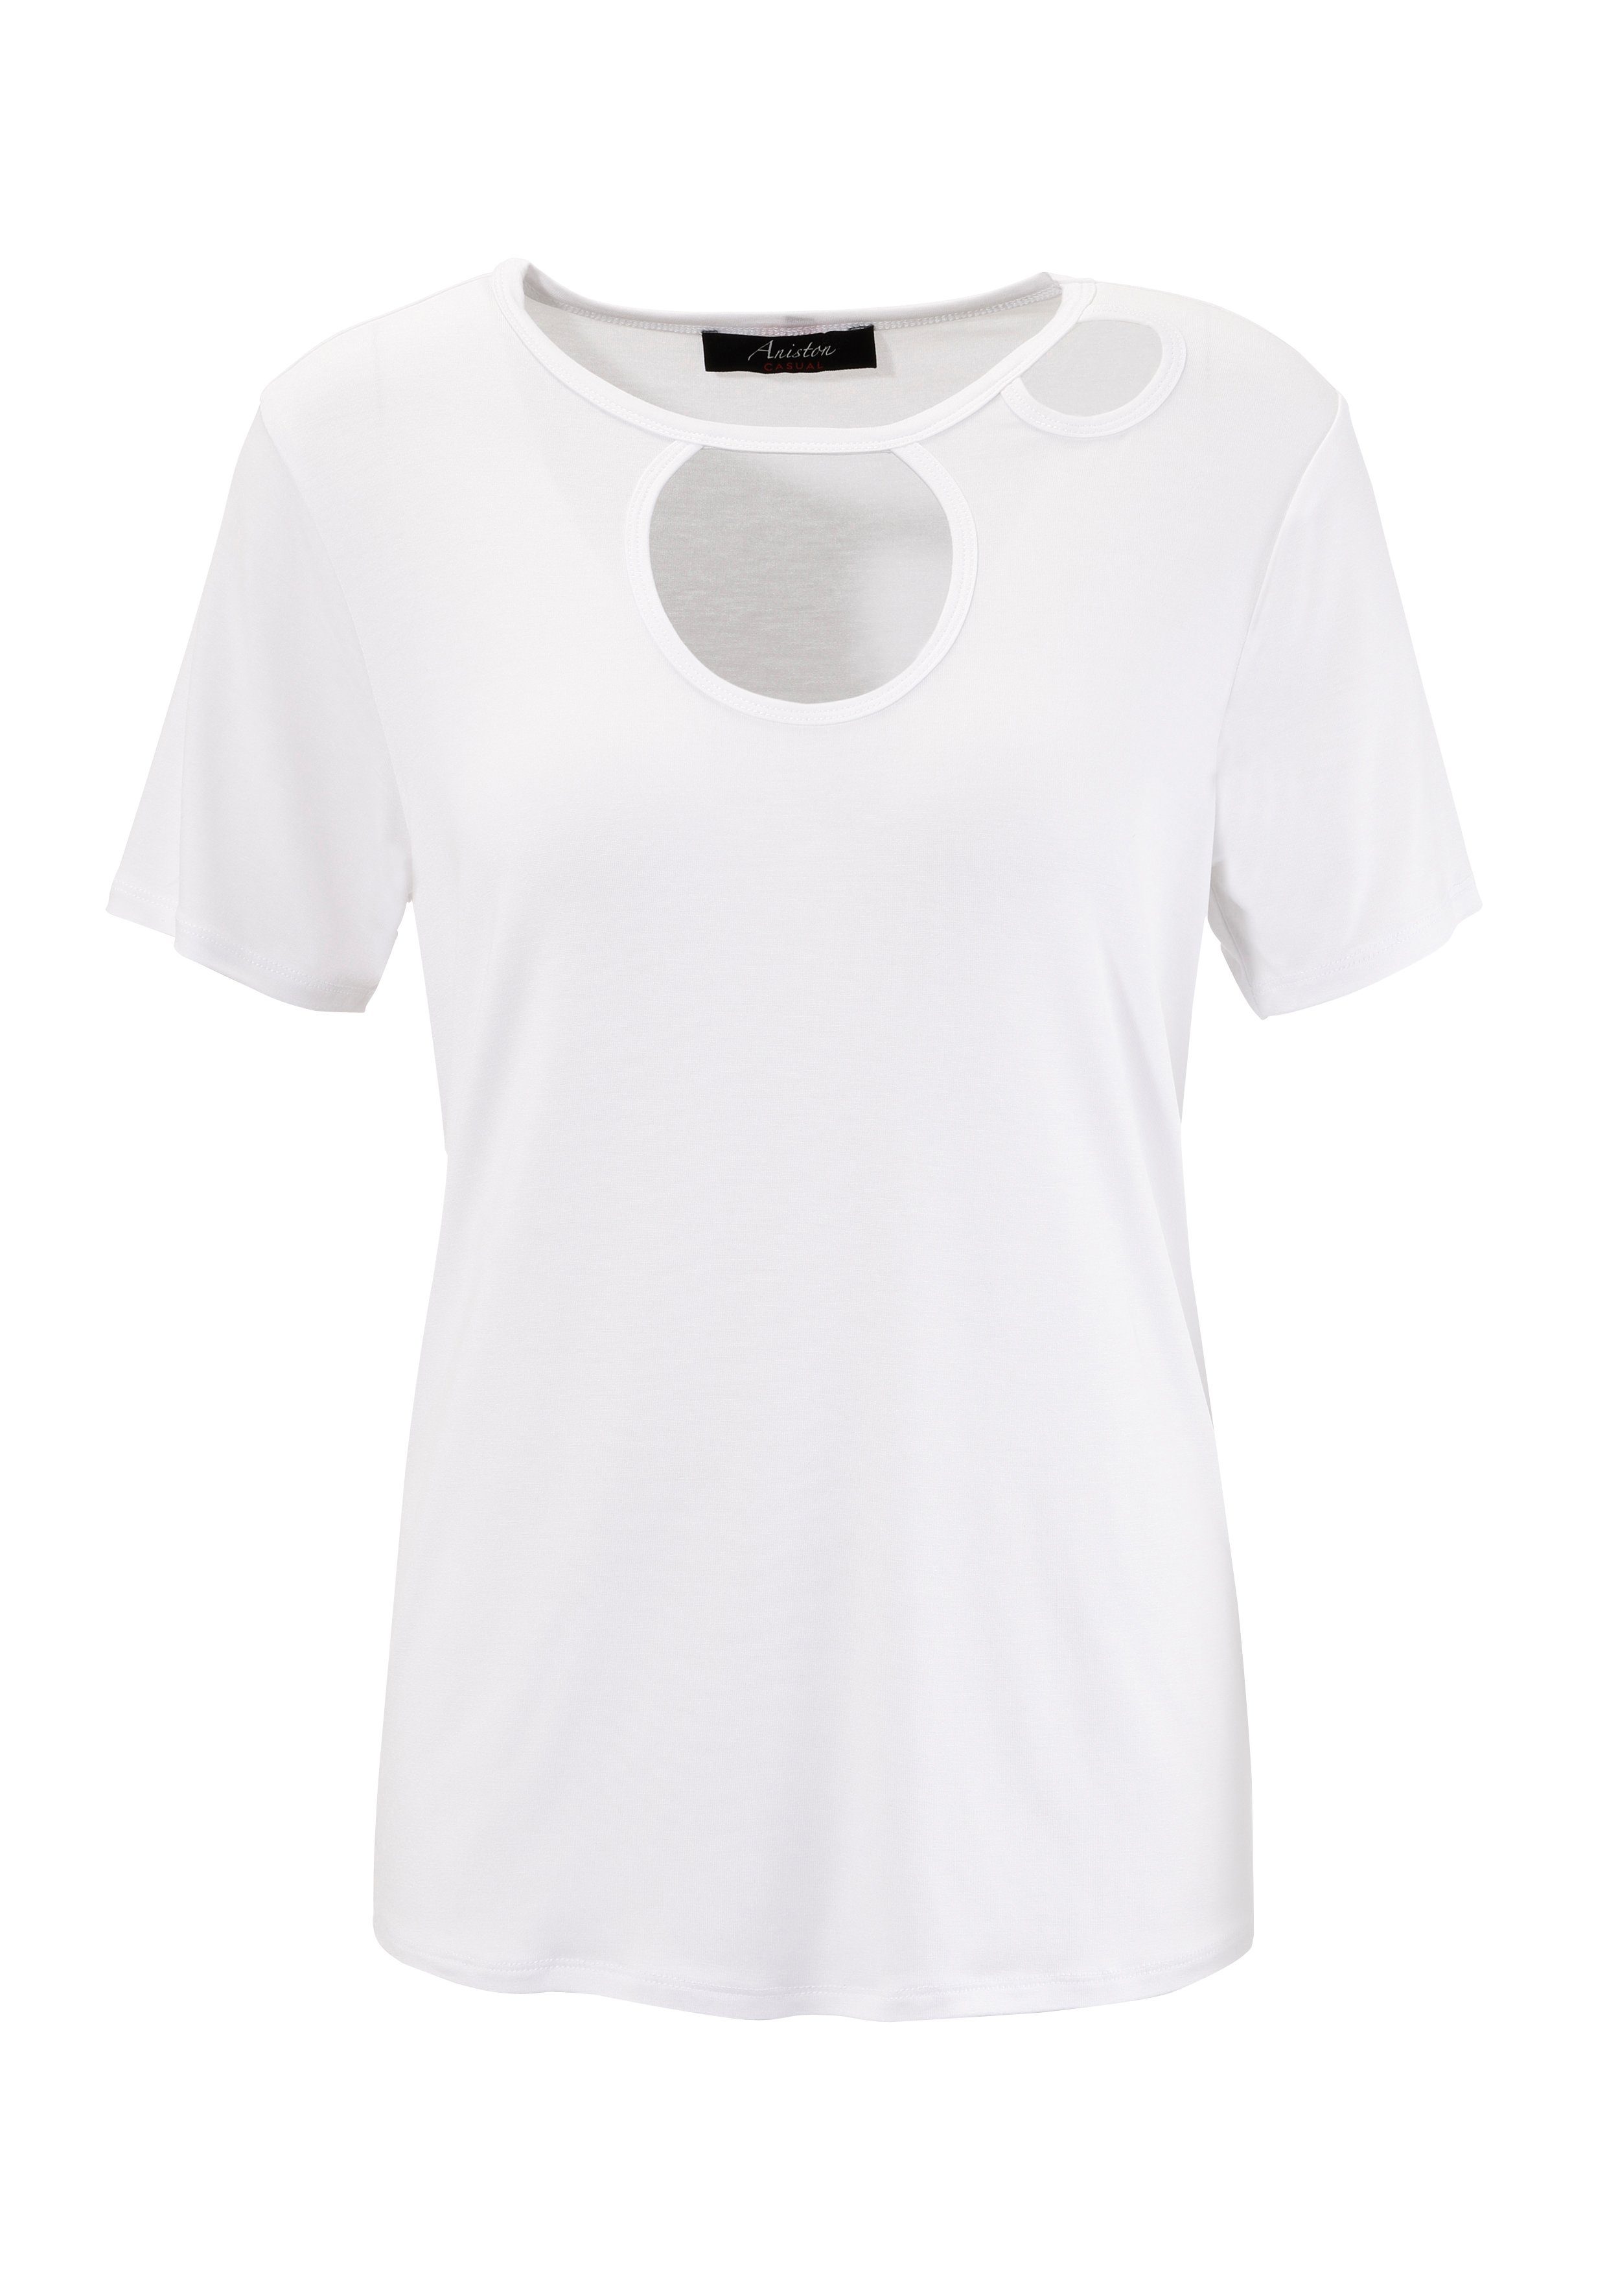 Aniston CASUAL T-Shirt mit KOLLEKTION - Cut-out's NEUE im trendigen Vorderteil weiß